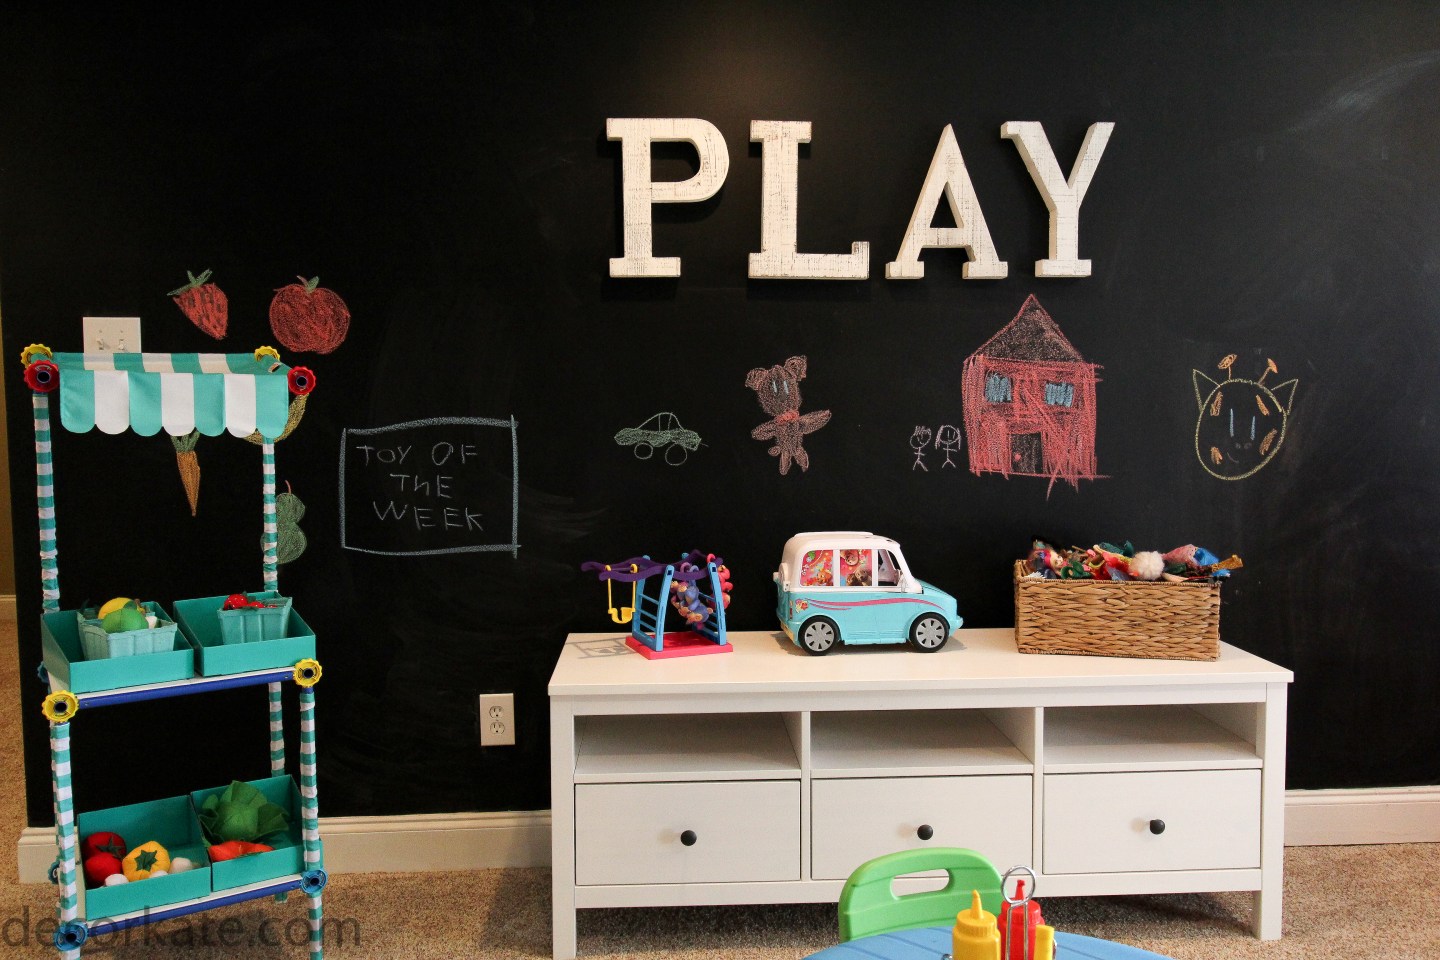 Playroom Chalkpaint Wall